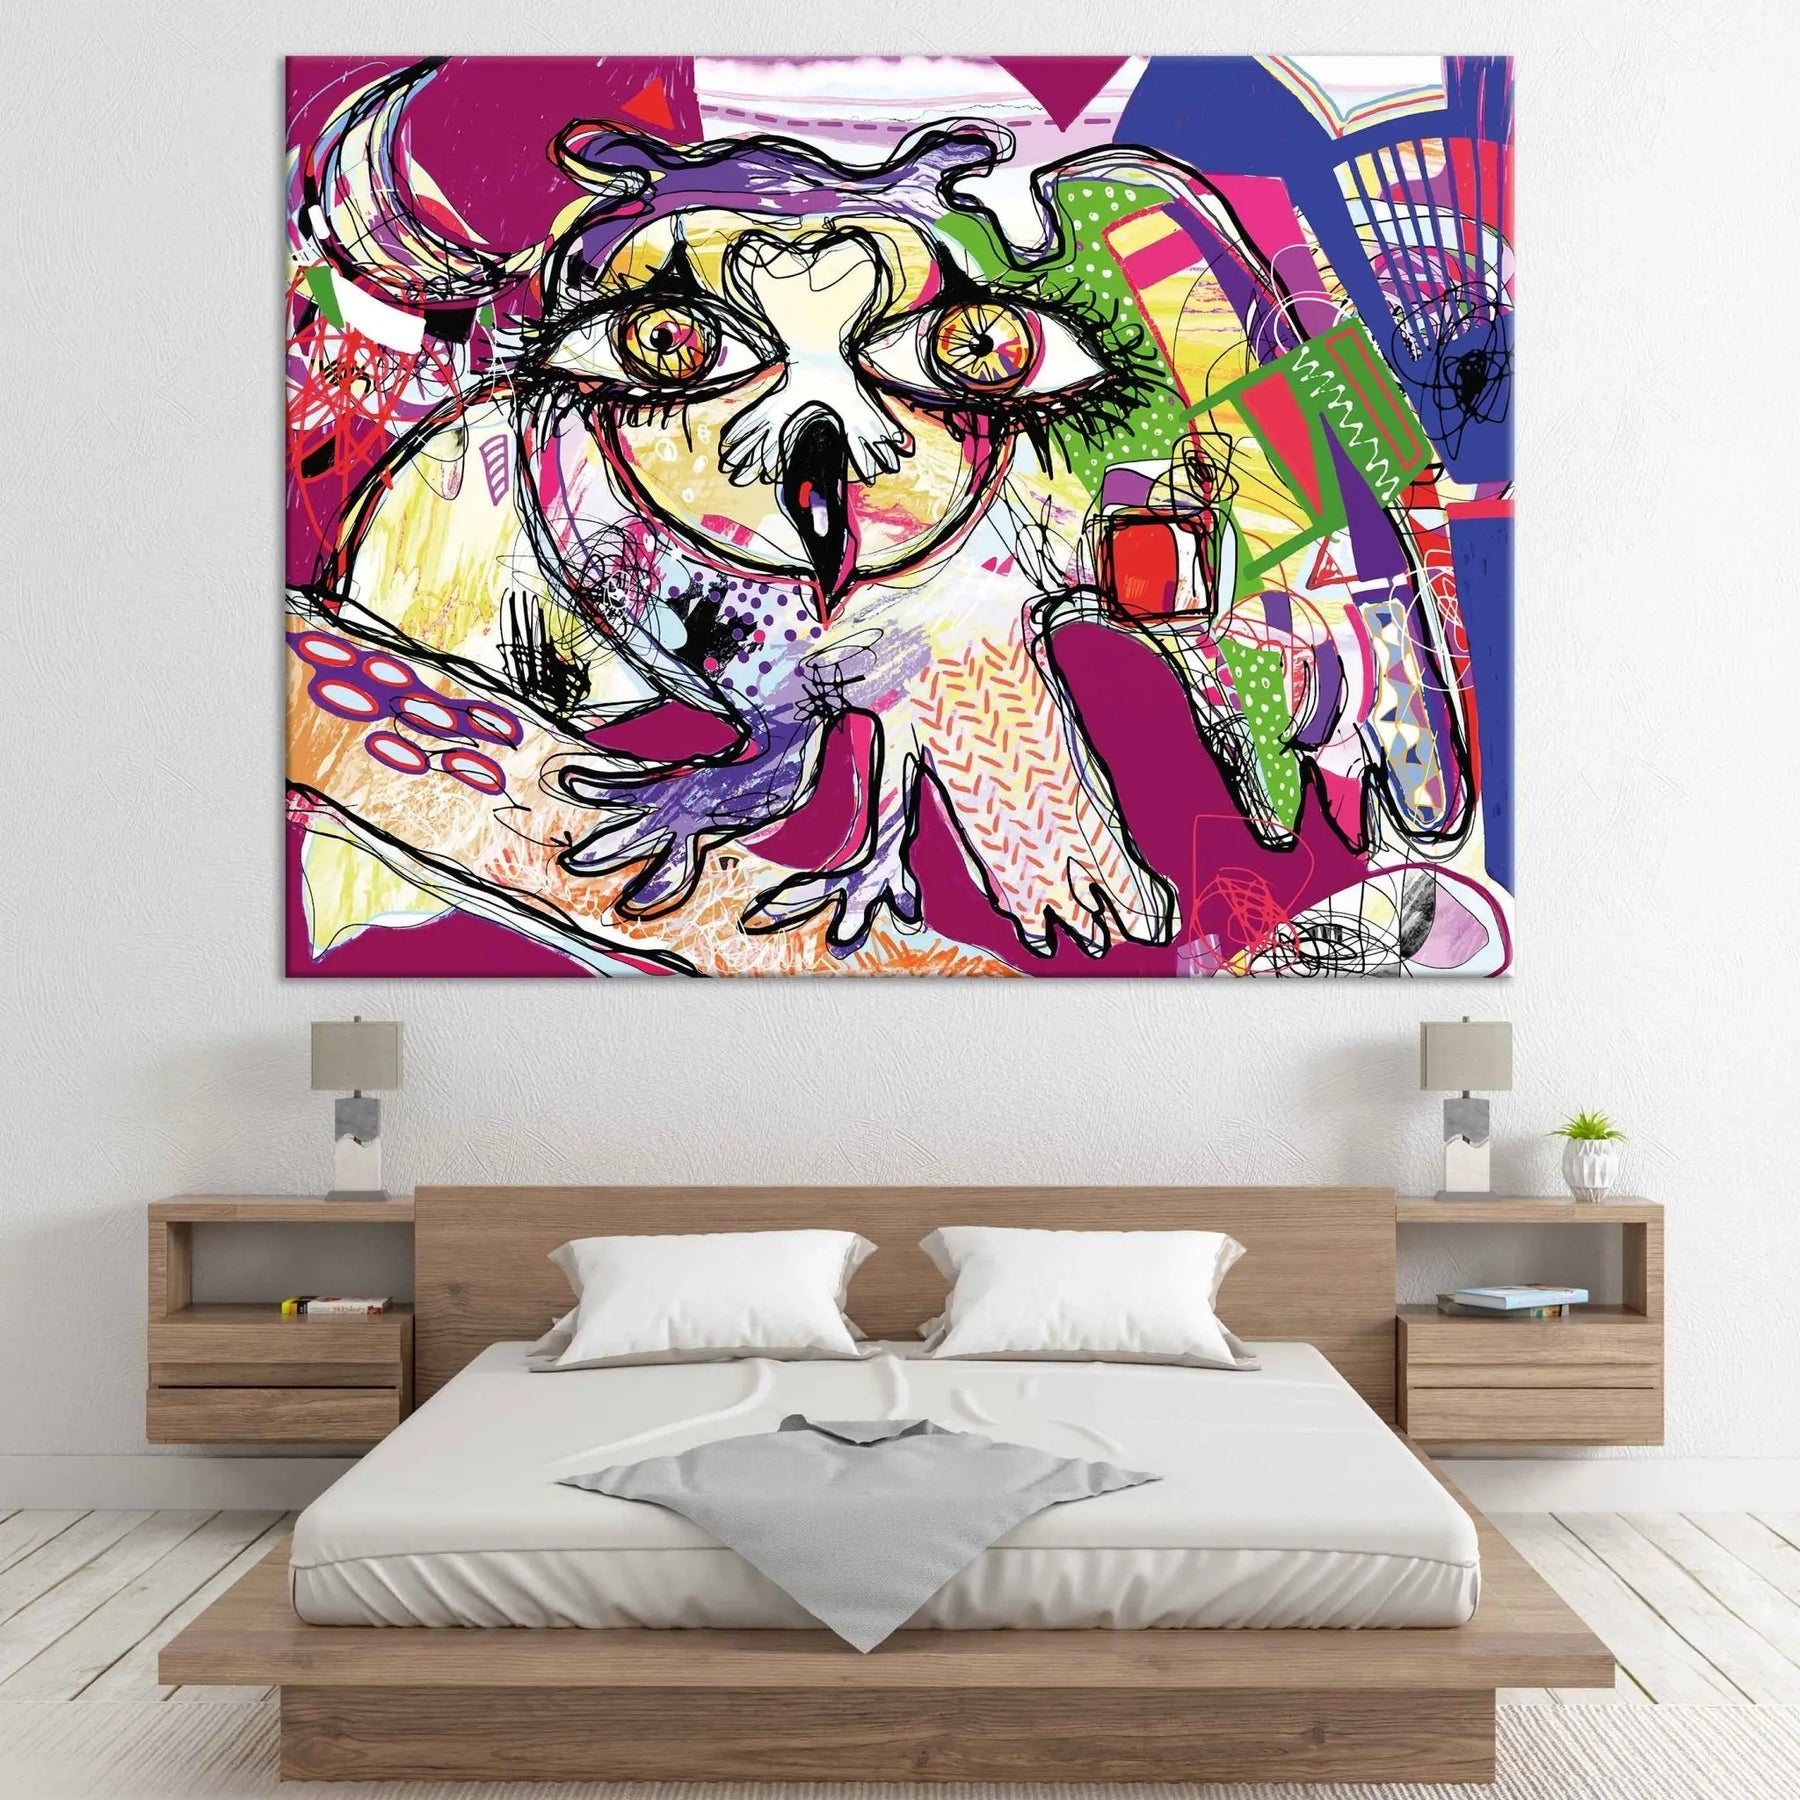 "CRAZY OWL" - Art For Everyone